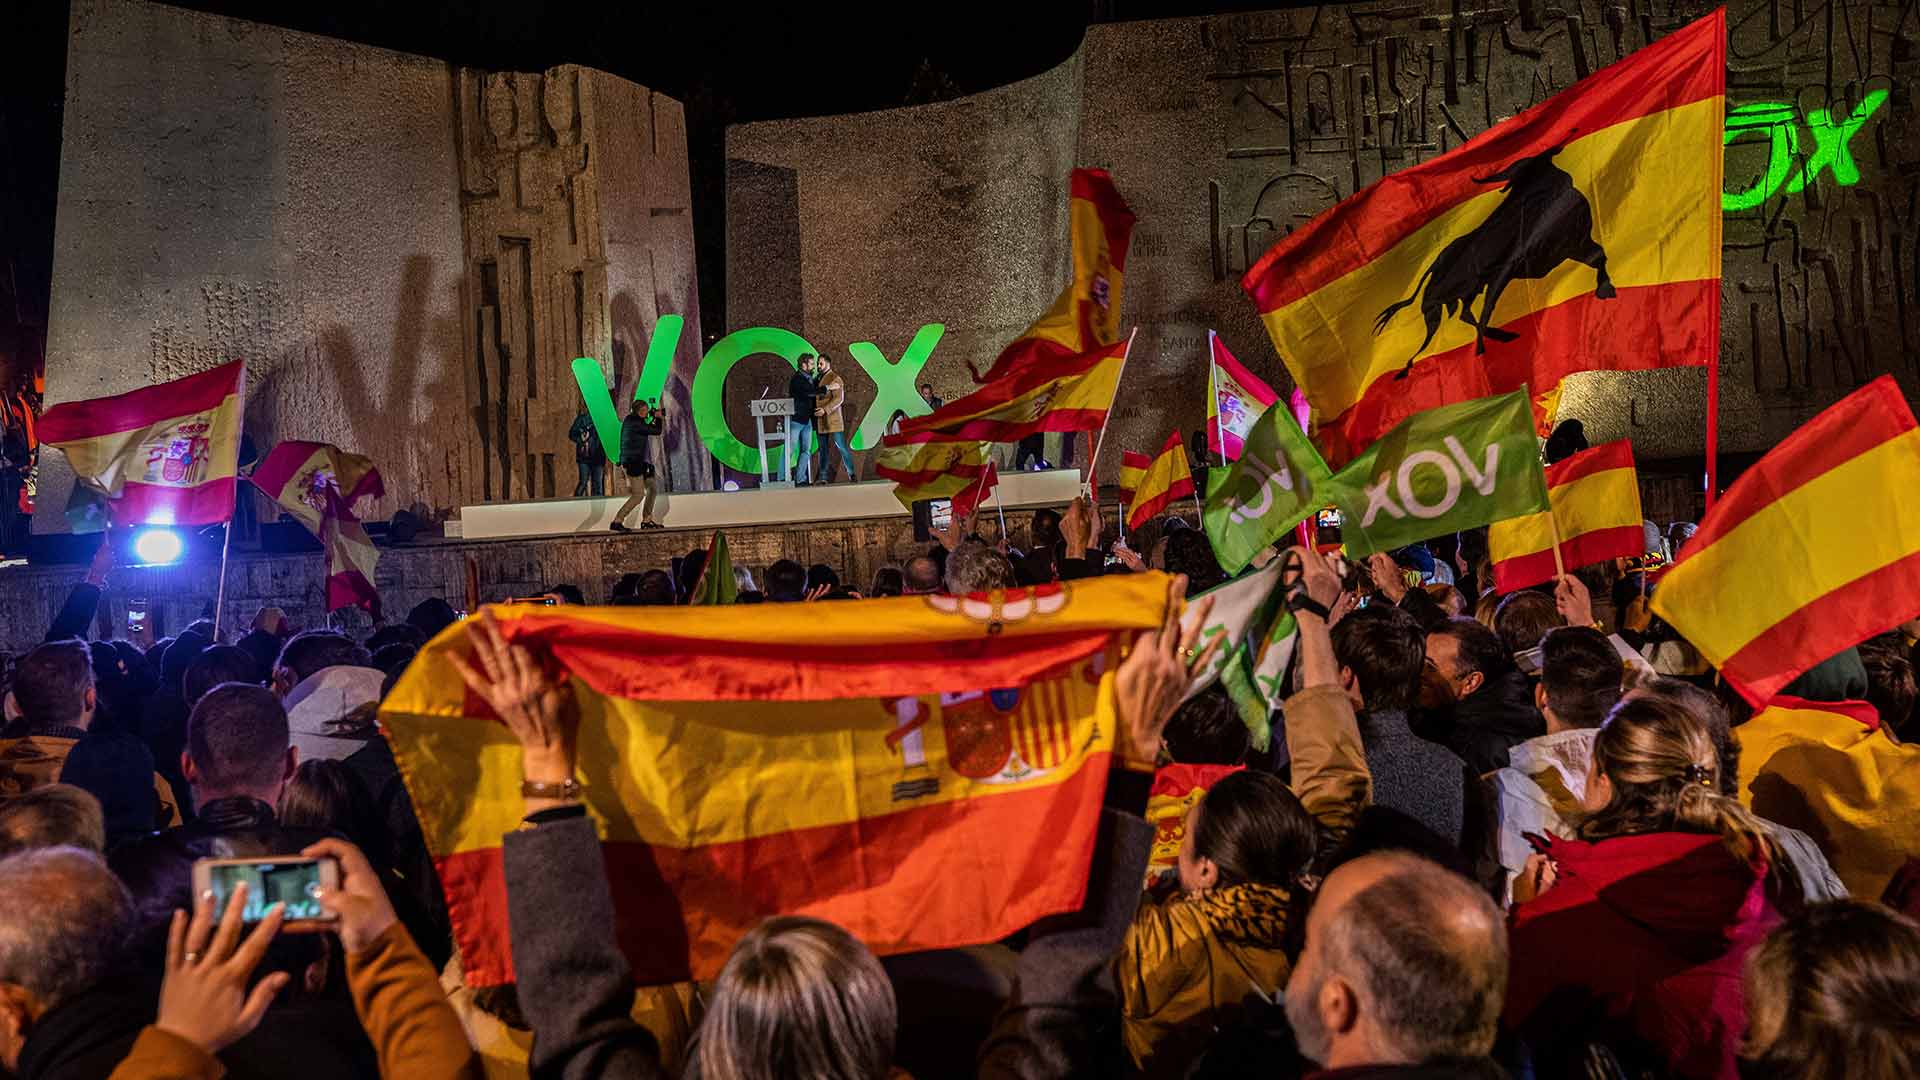 Dimite en bloque la Ejecutiva de Vox en Murcia por "exceso de trabajo" tras ganar las elecciones